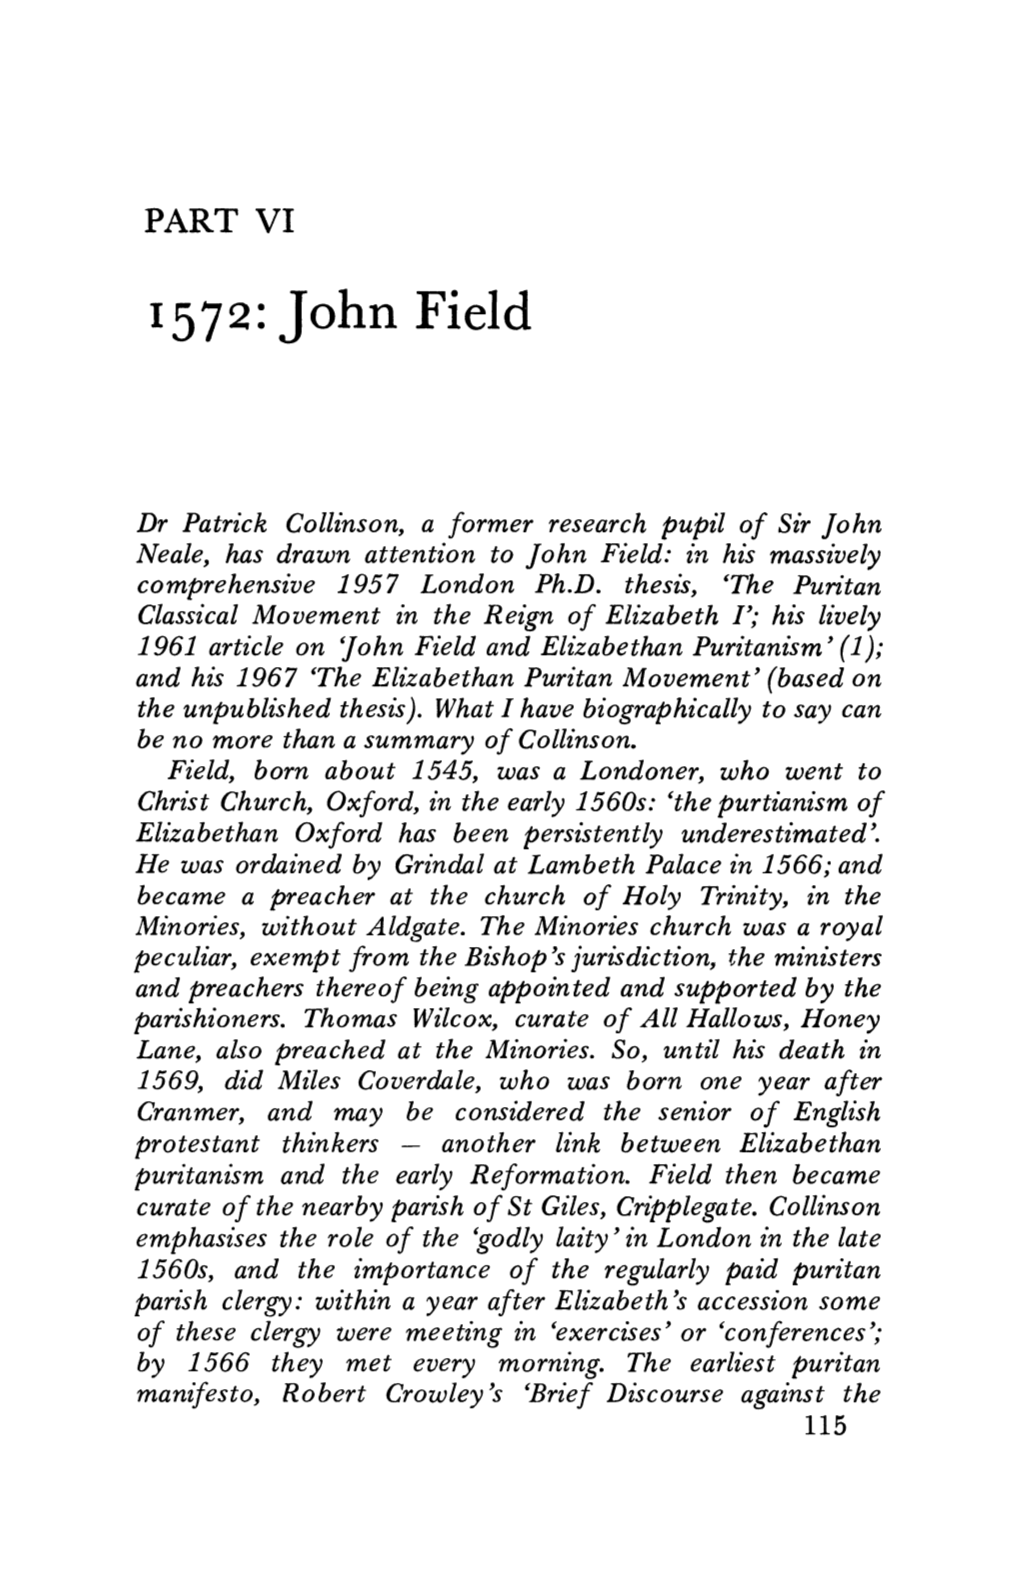 1572: John Field